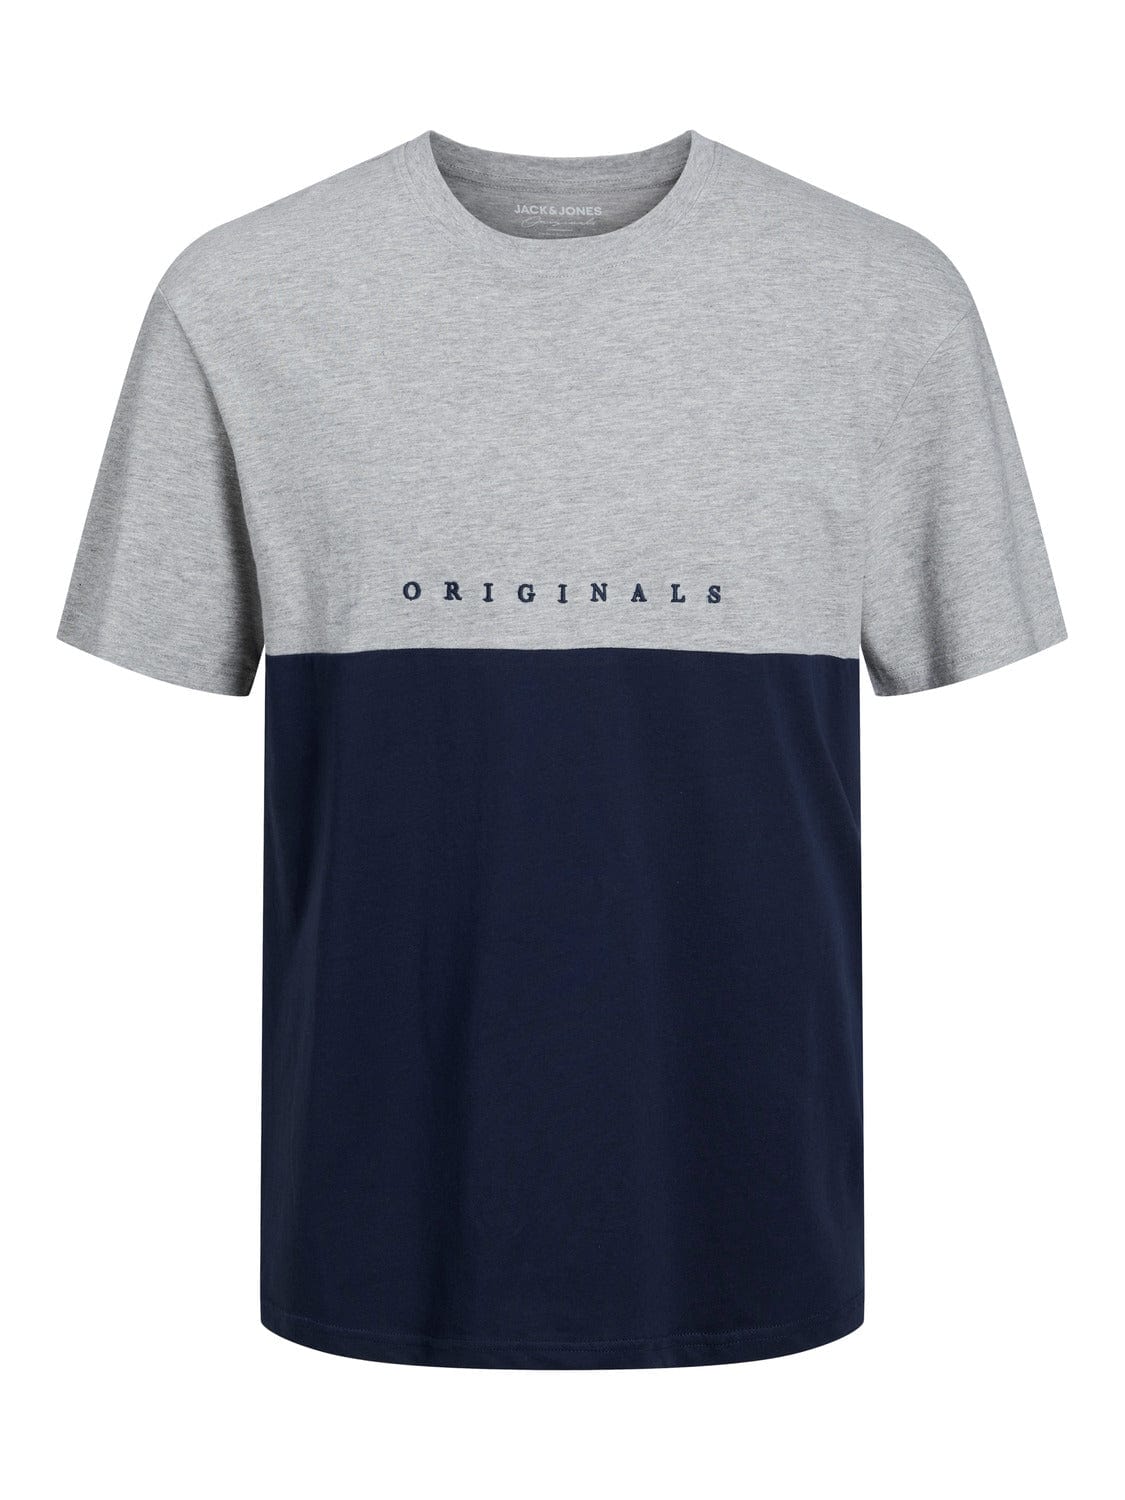 Camiseta de manga corta gris- JORCOPENHAGEN